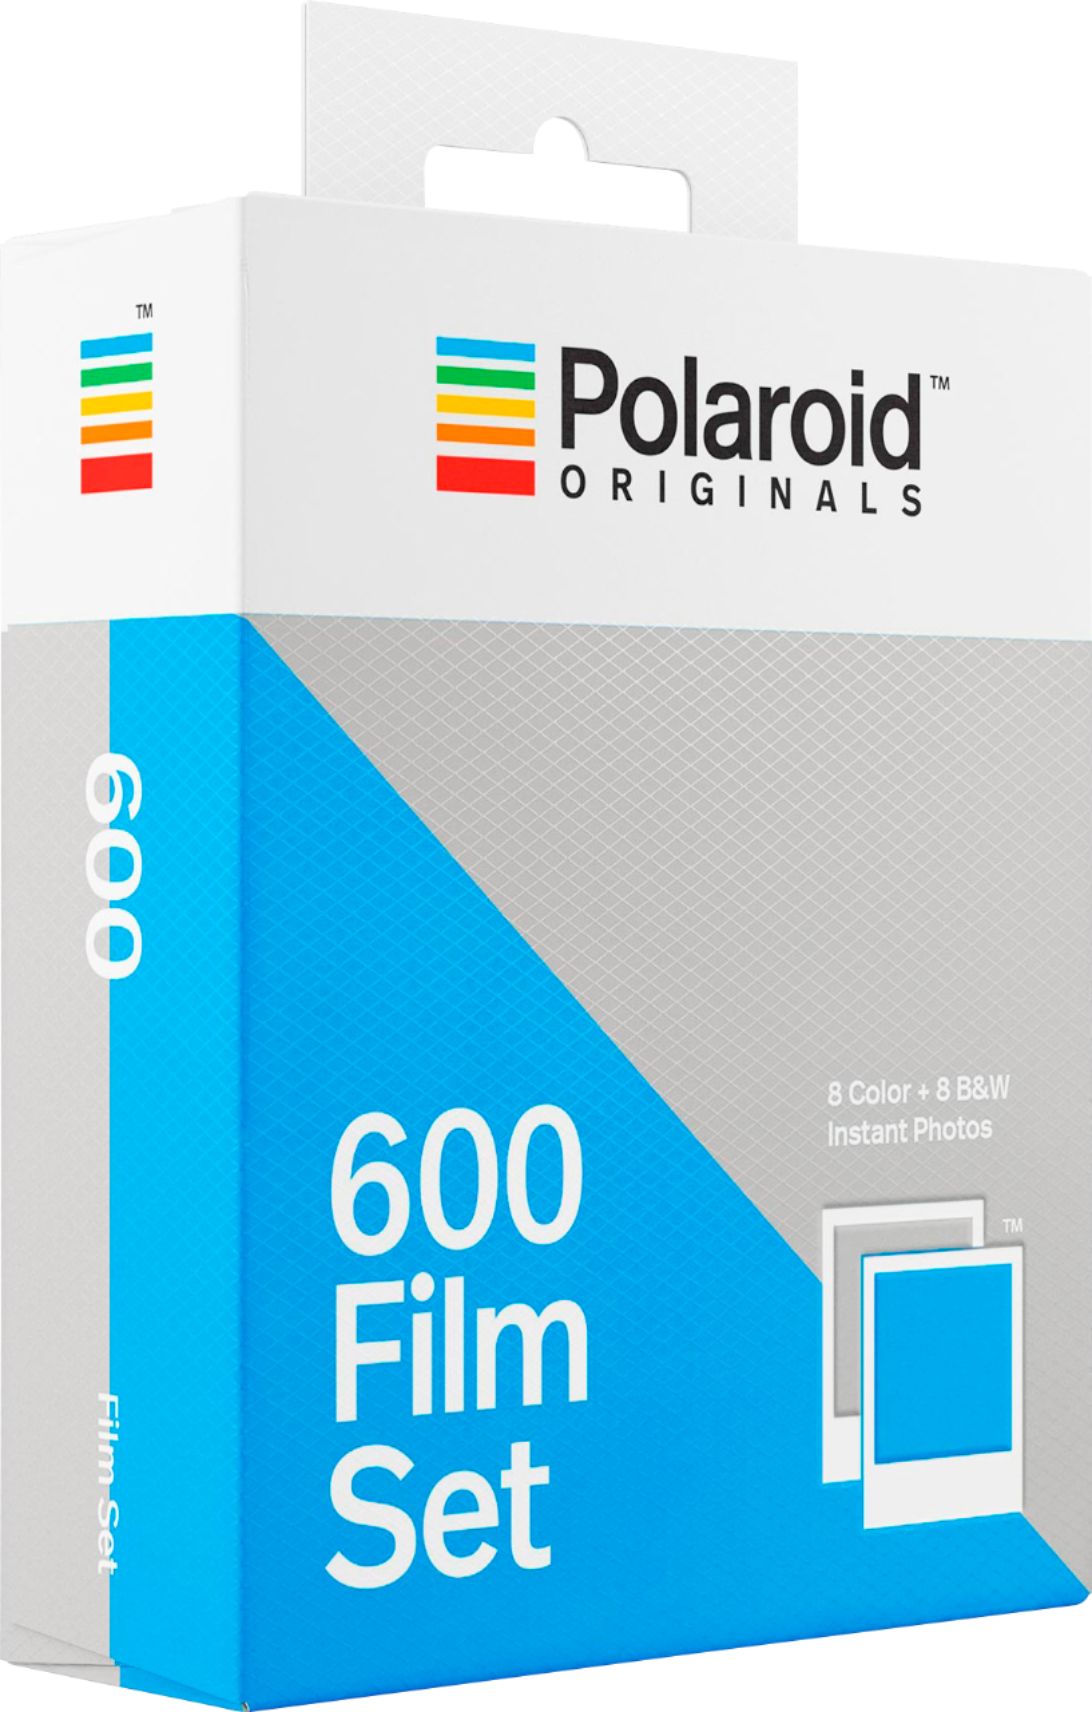 Polaroid Originals Color 600 Film - Round Frame Edition (8 Photo Sheet —  Beach Camera